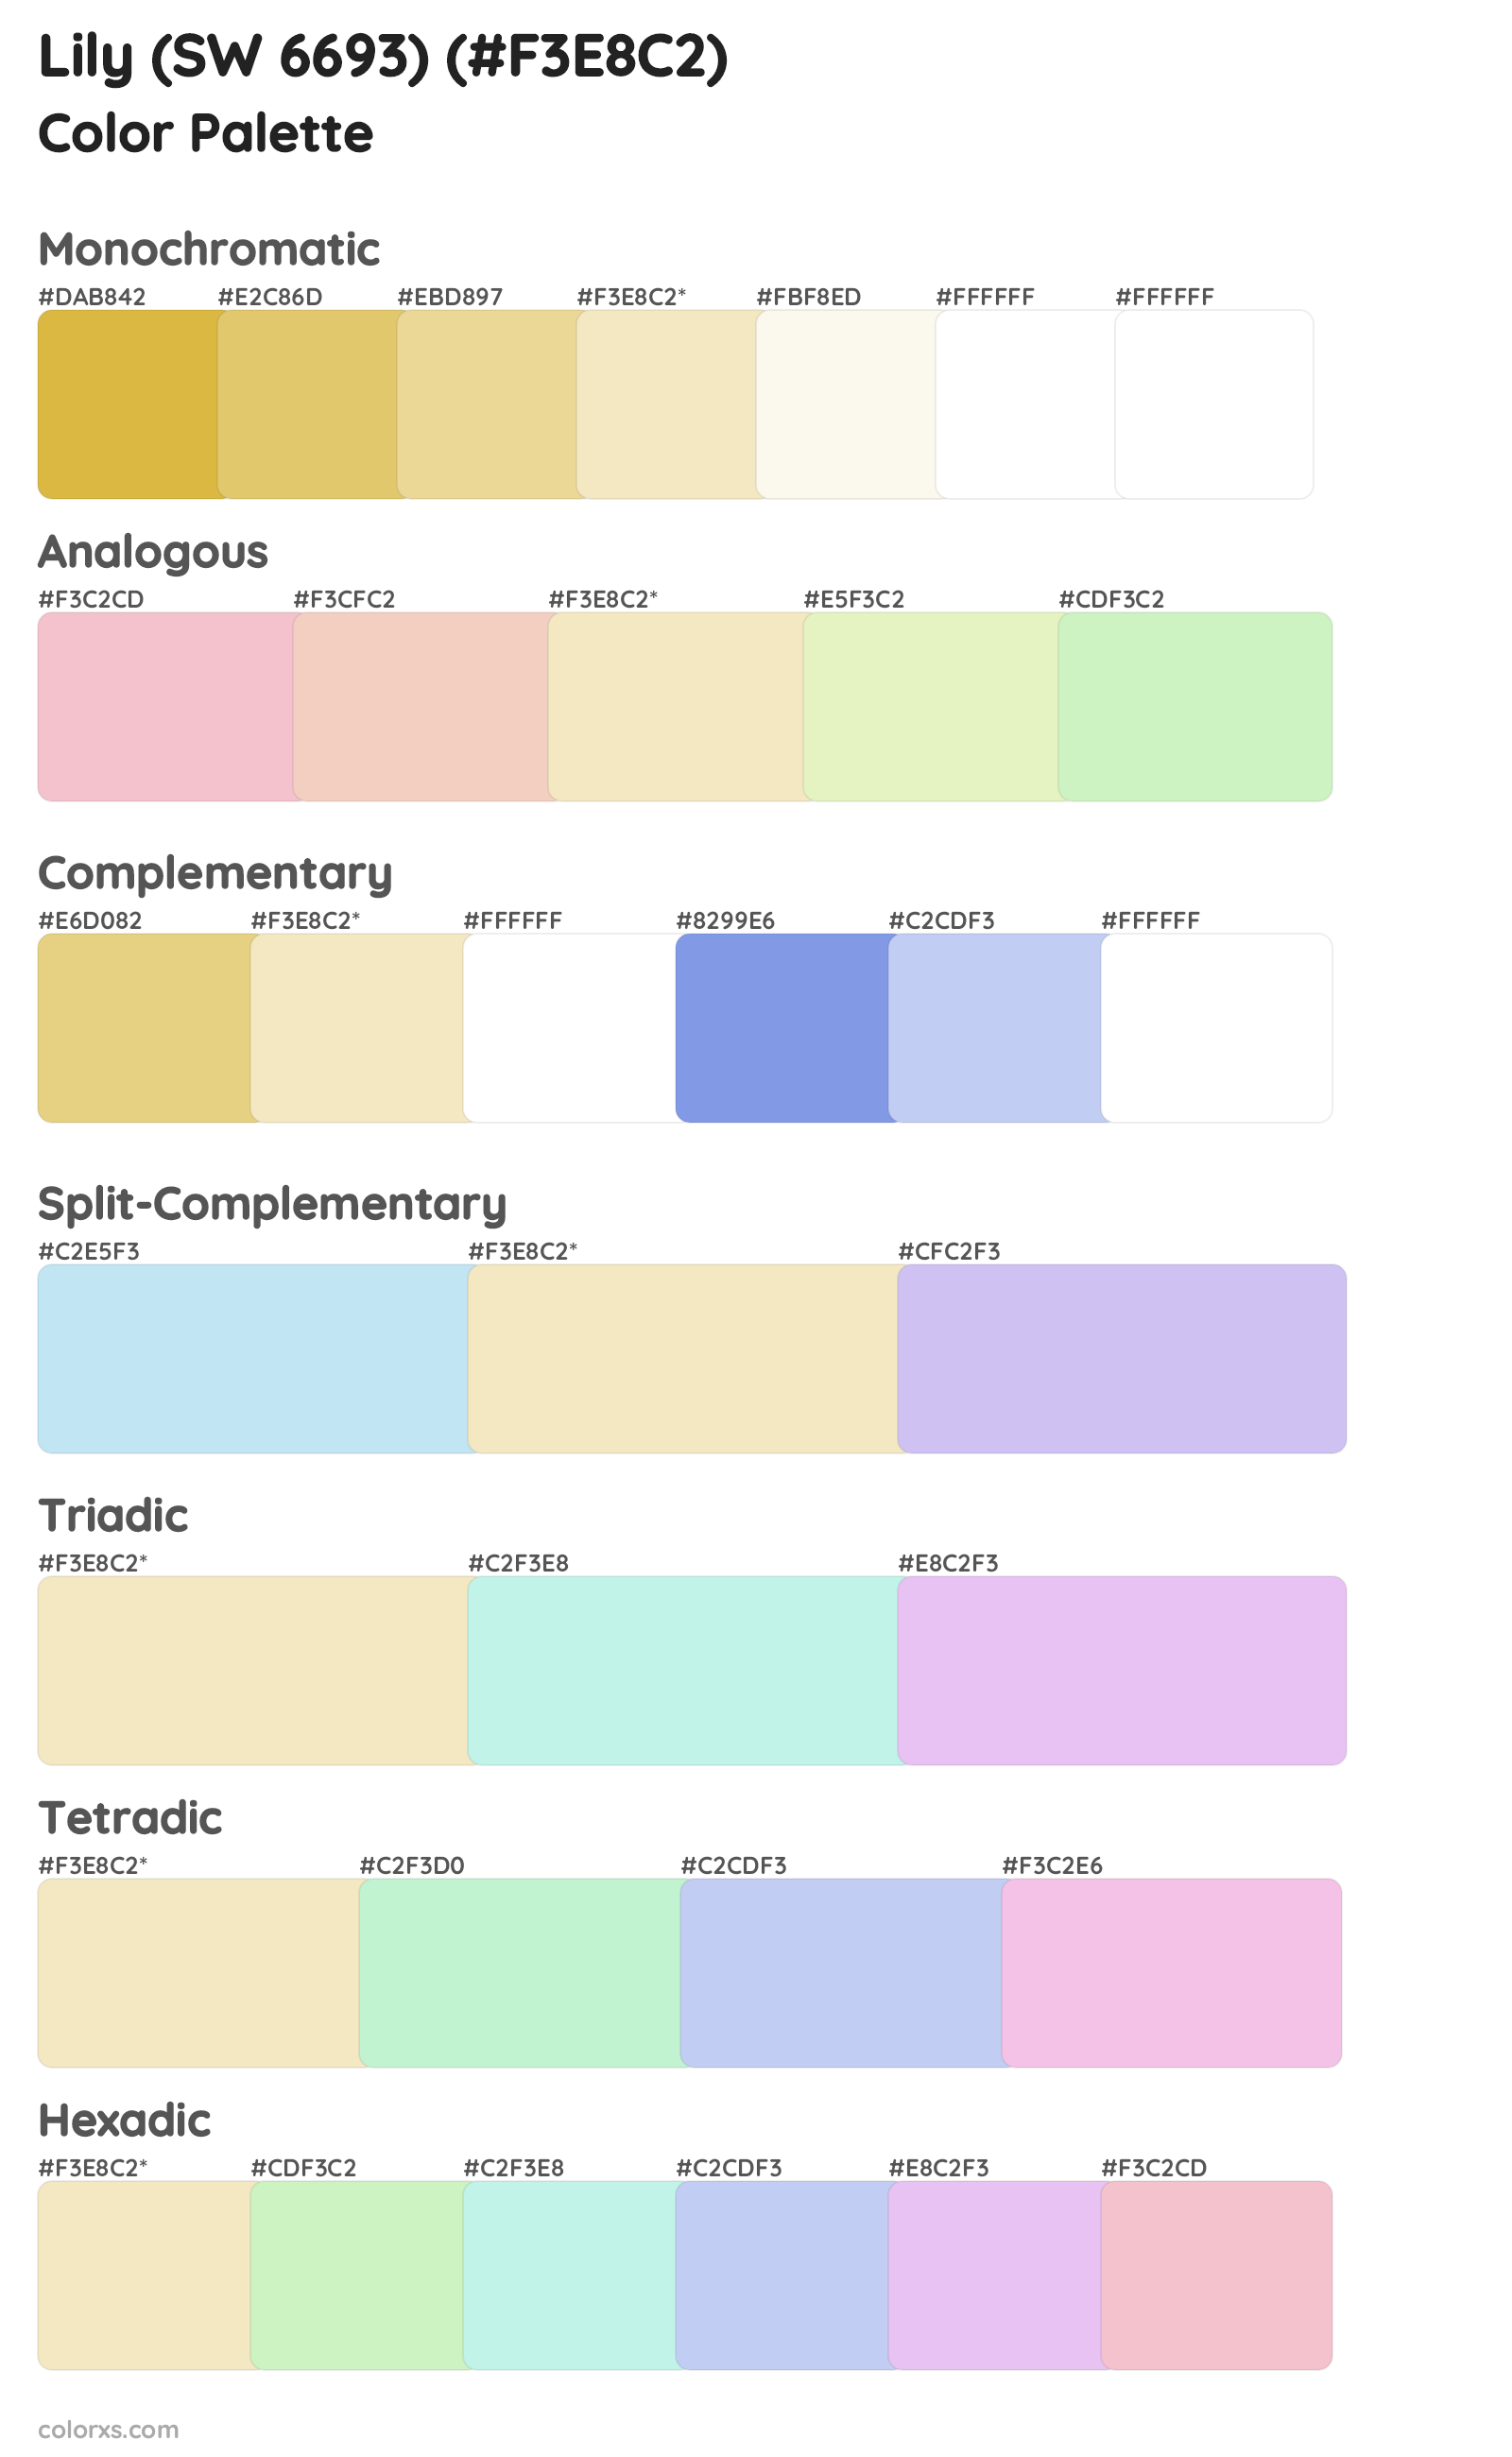 Lily (SW 6693) Color Scheme Palettes